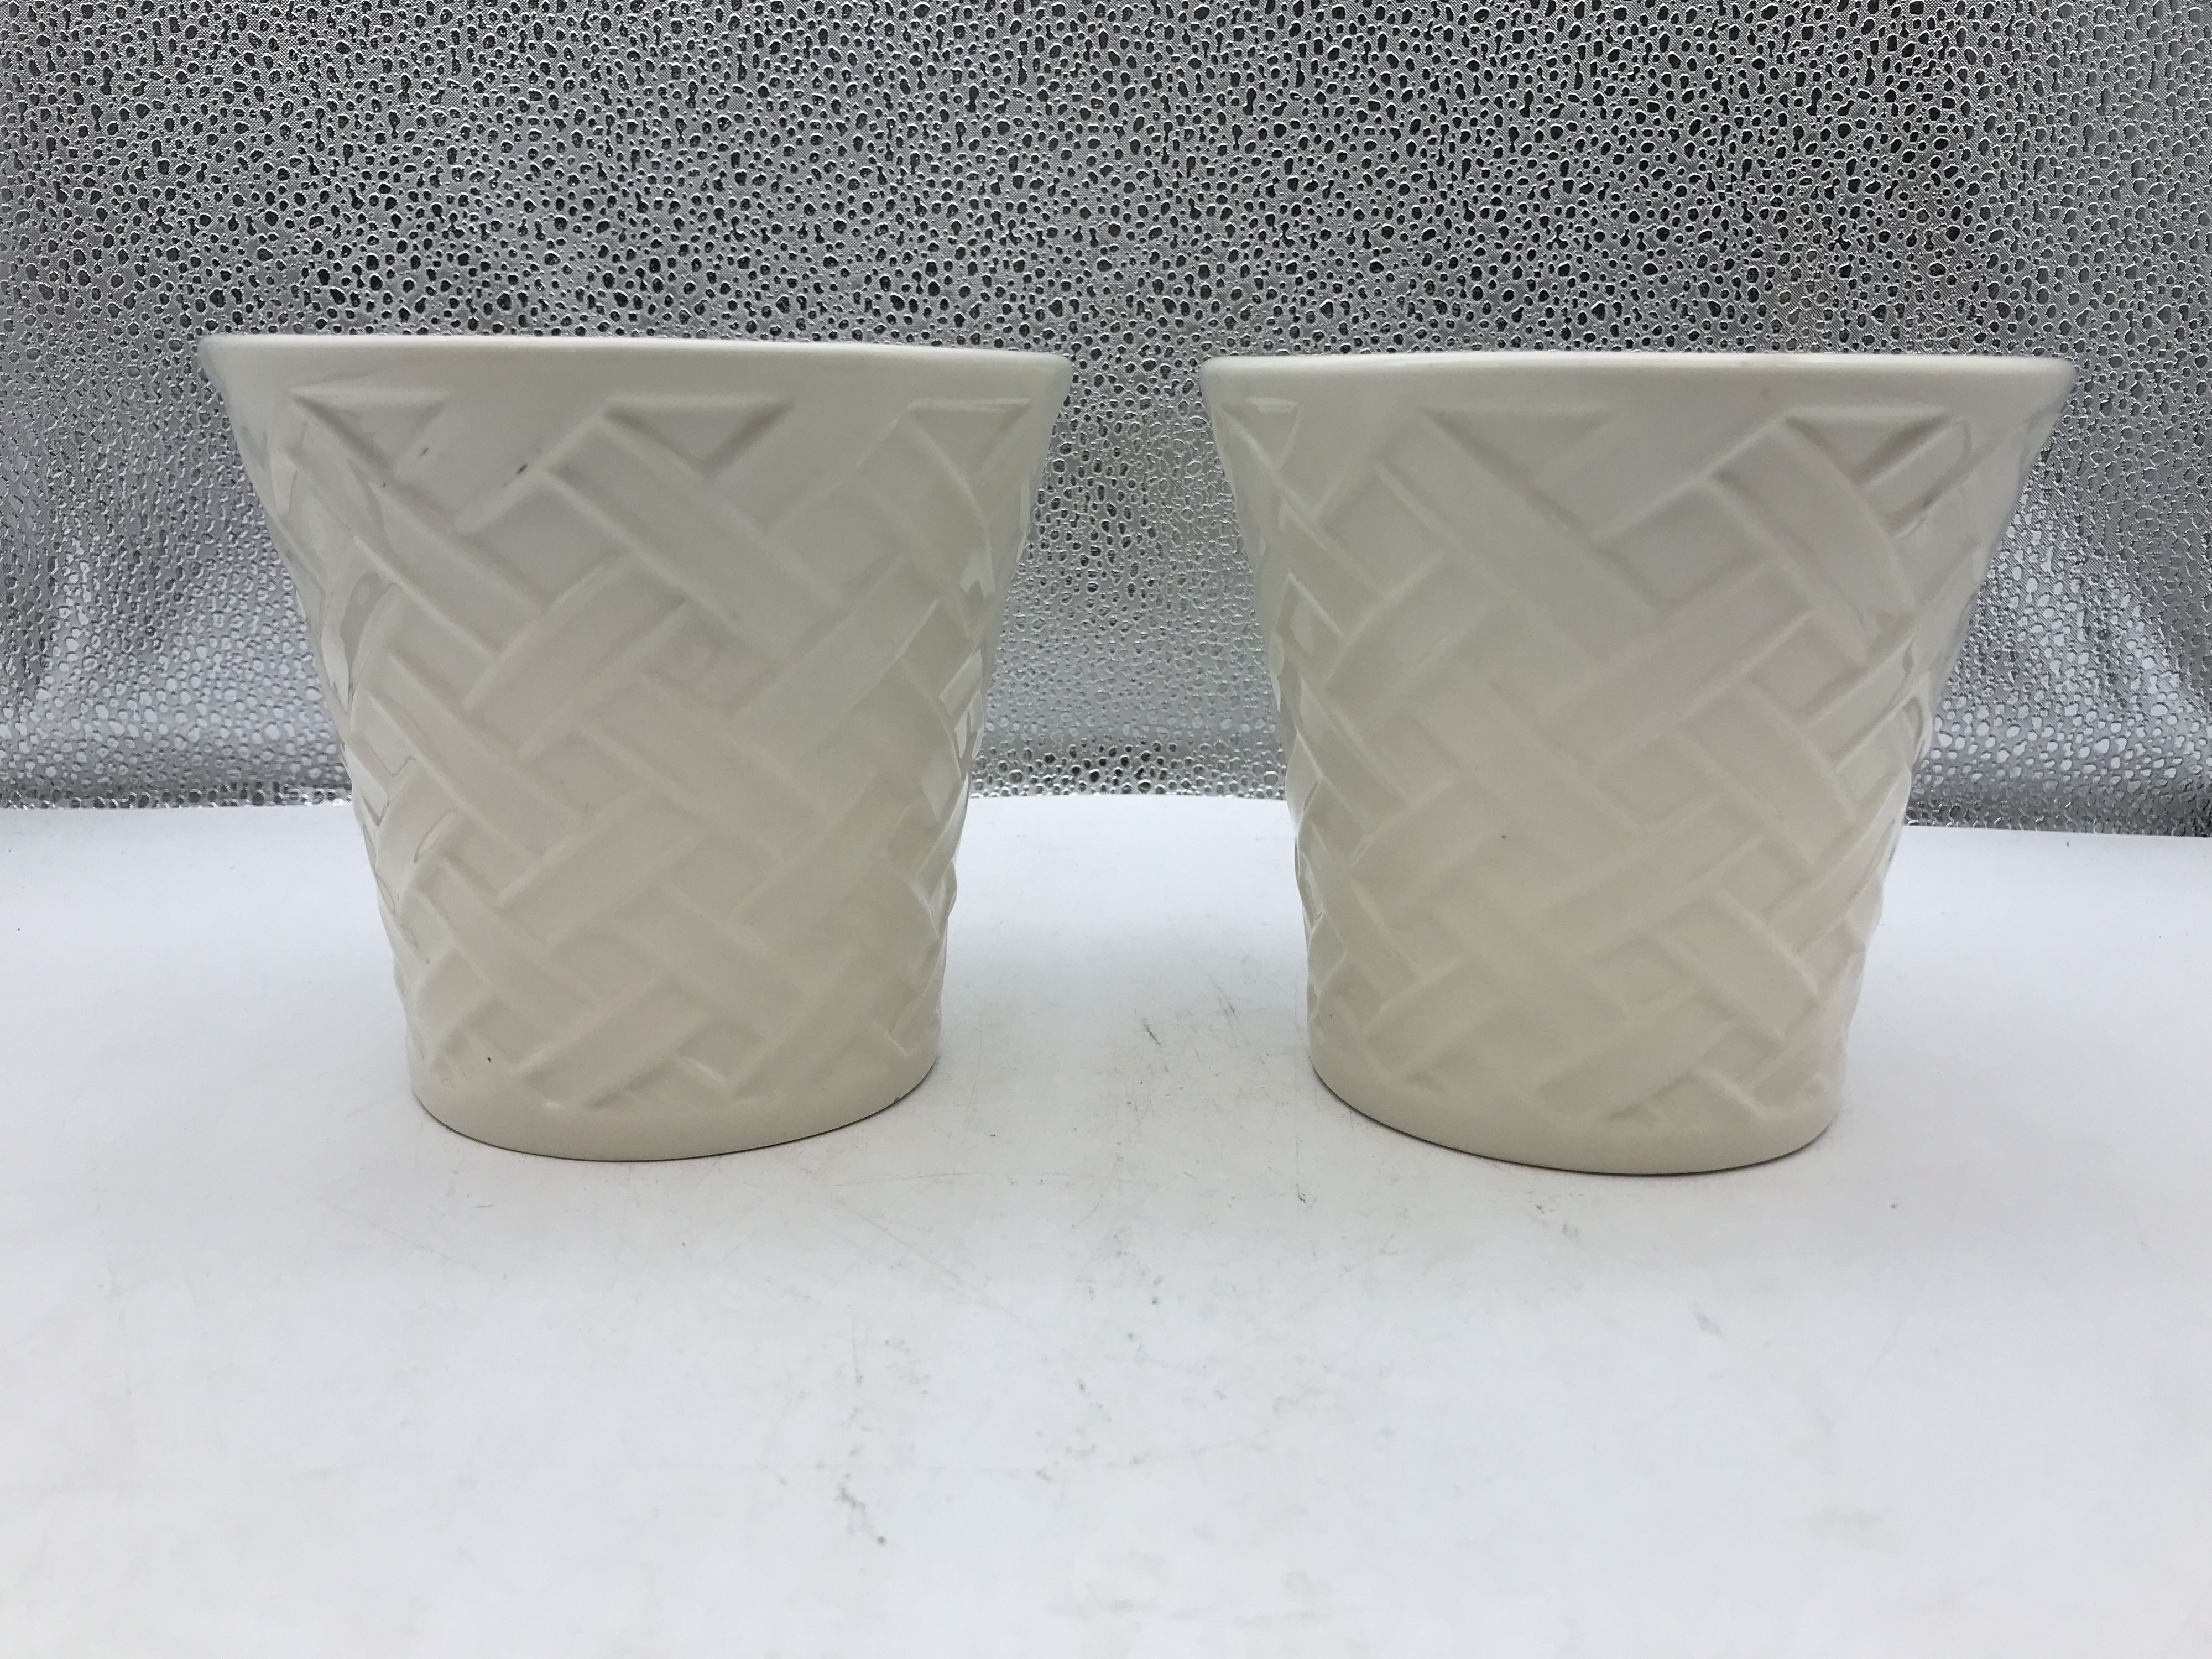 Bath & Body Works Ceramic Cream Colored Basketweave Design Small Planters